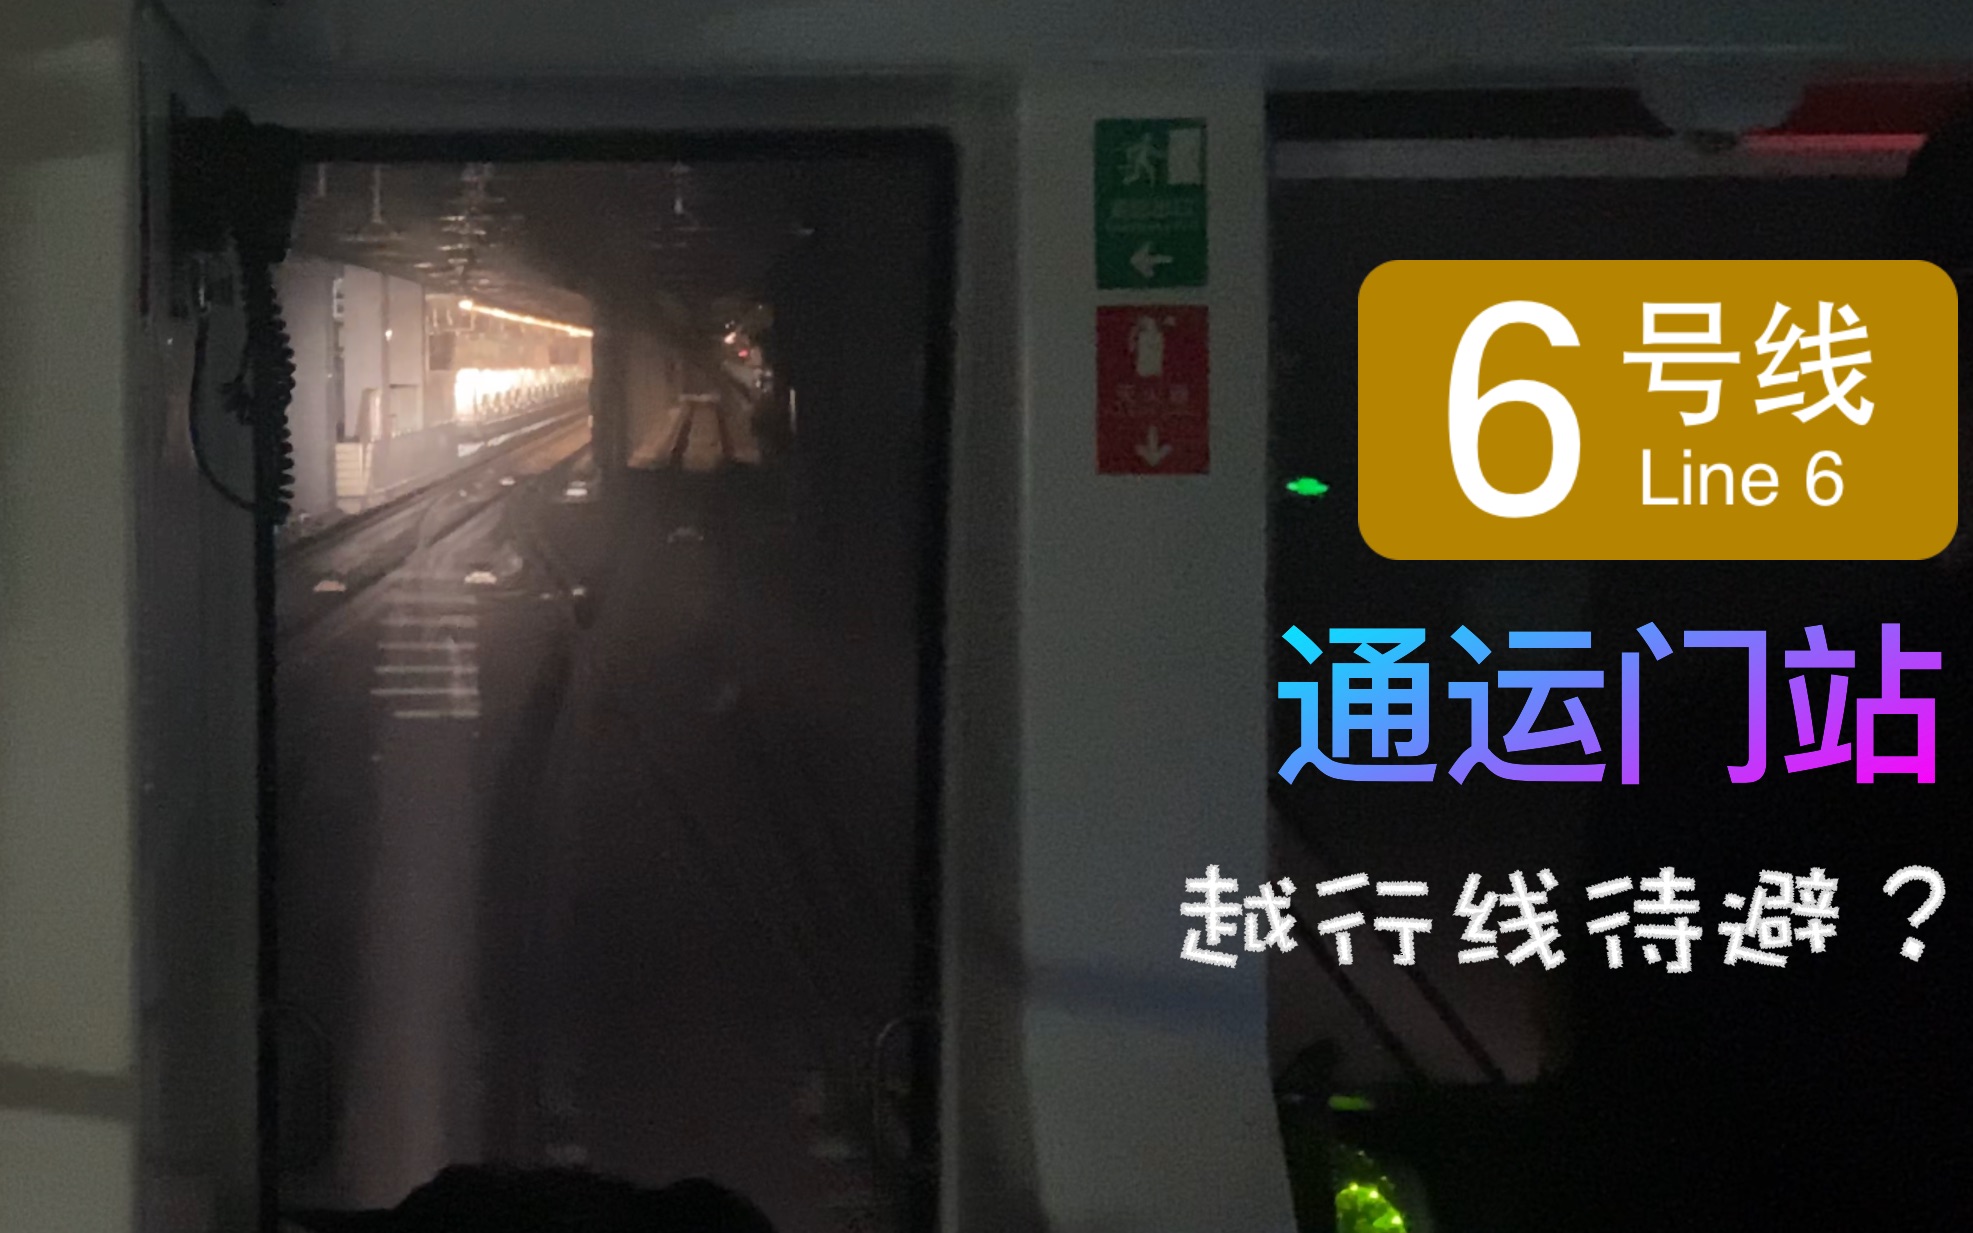 北京地铁通运门站图片